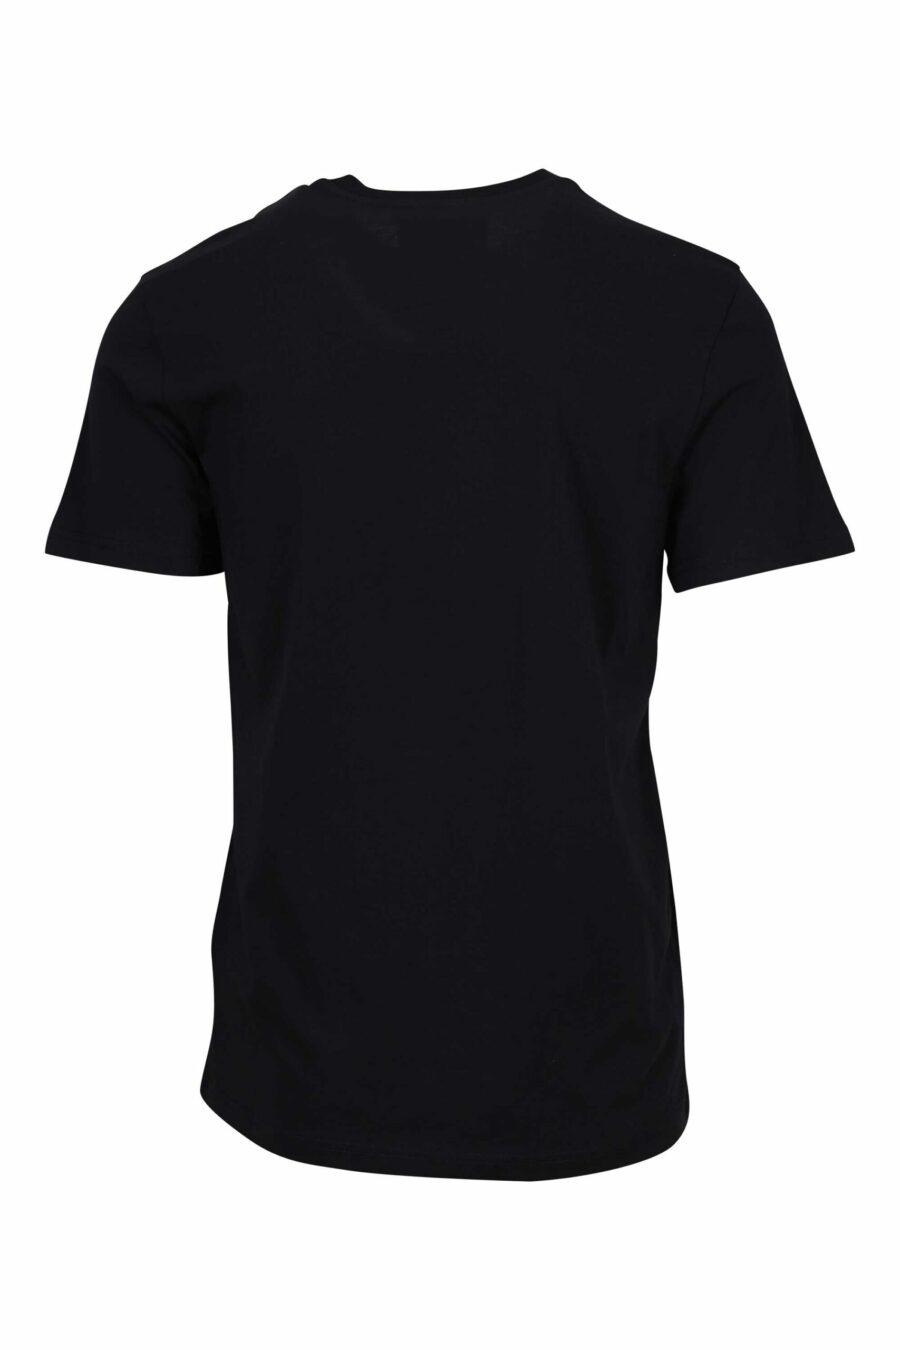 Camiseta negra "oversize" de algodón orgánico con maxilogo negro clásico - 667113752051 1 scaled